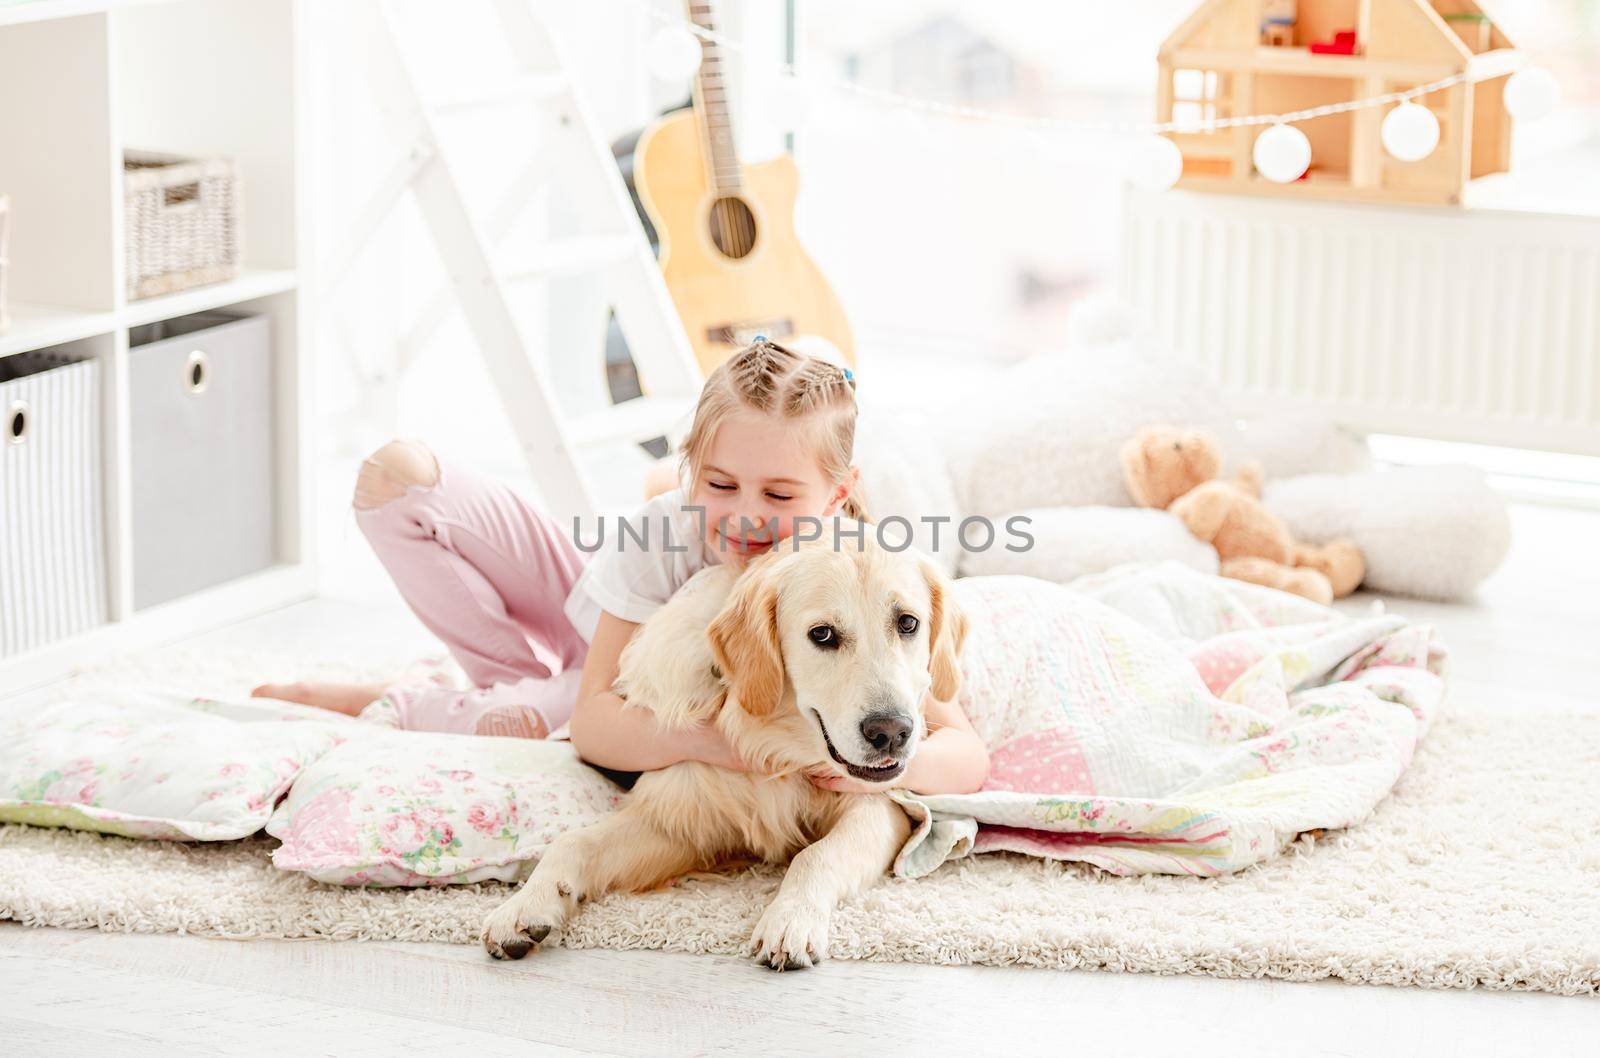 Cute little girl hugging adorable dog on blanket indoors